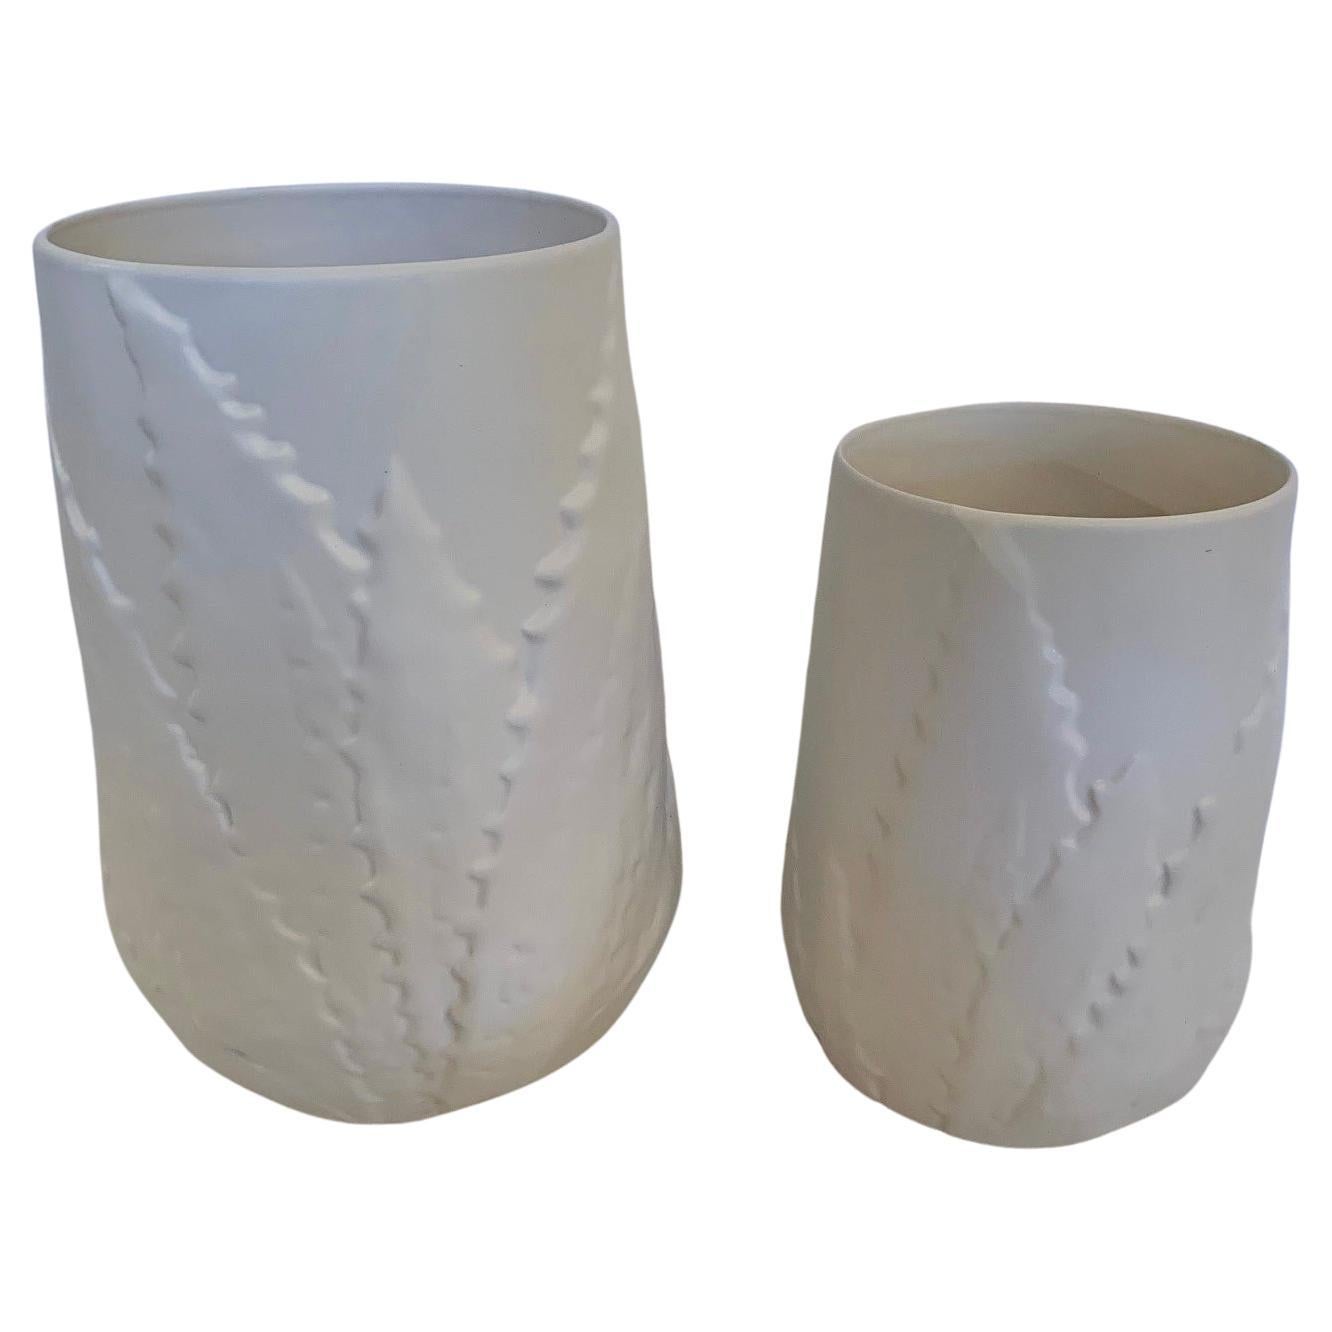 Zwei schöne weiße Keramik-Pflanzgefäße oder Vasen